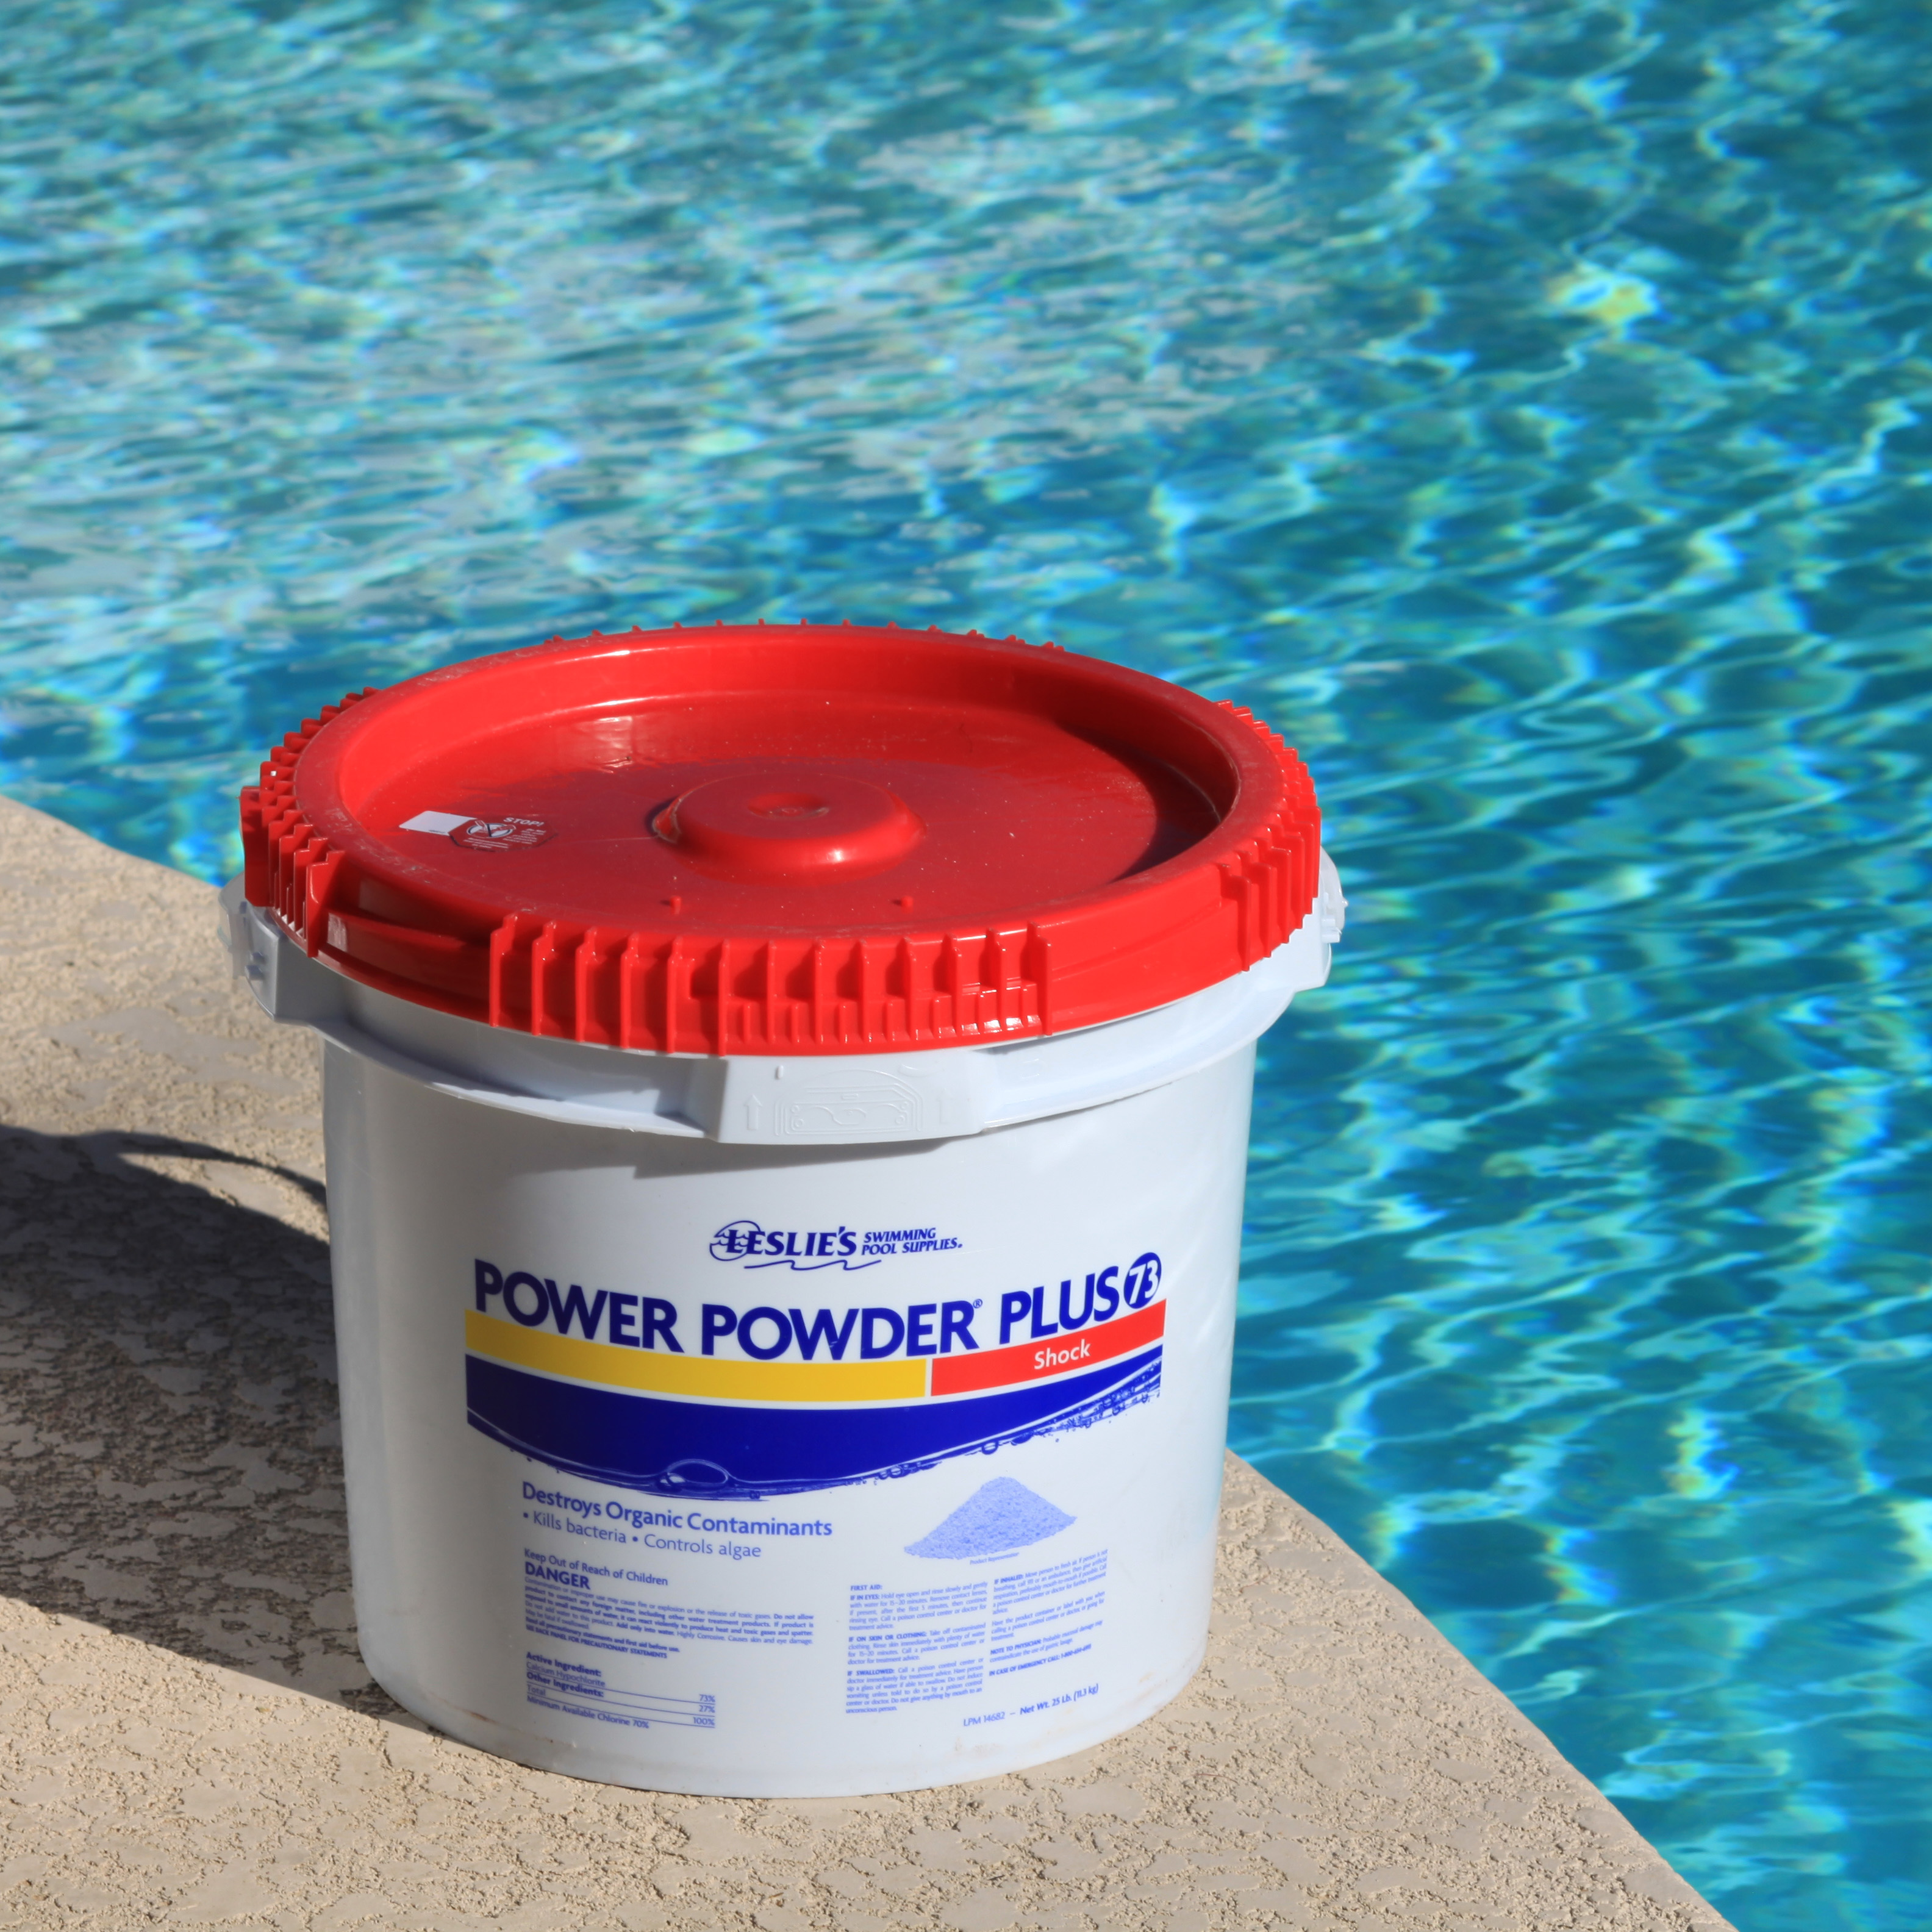 Leslie's Power Powder Plus pool shock